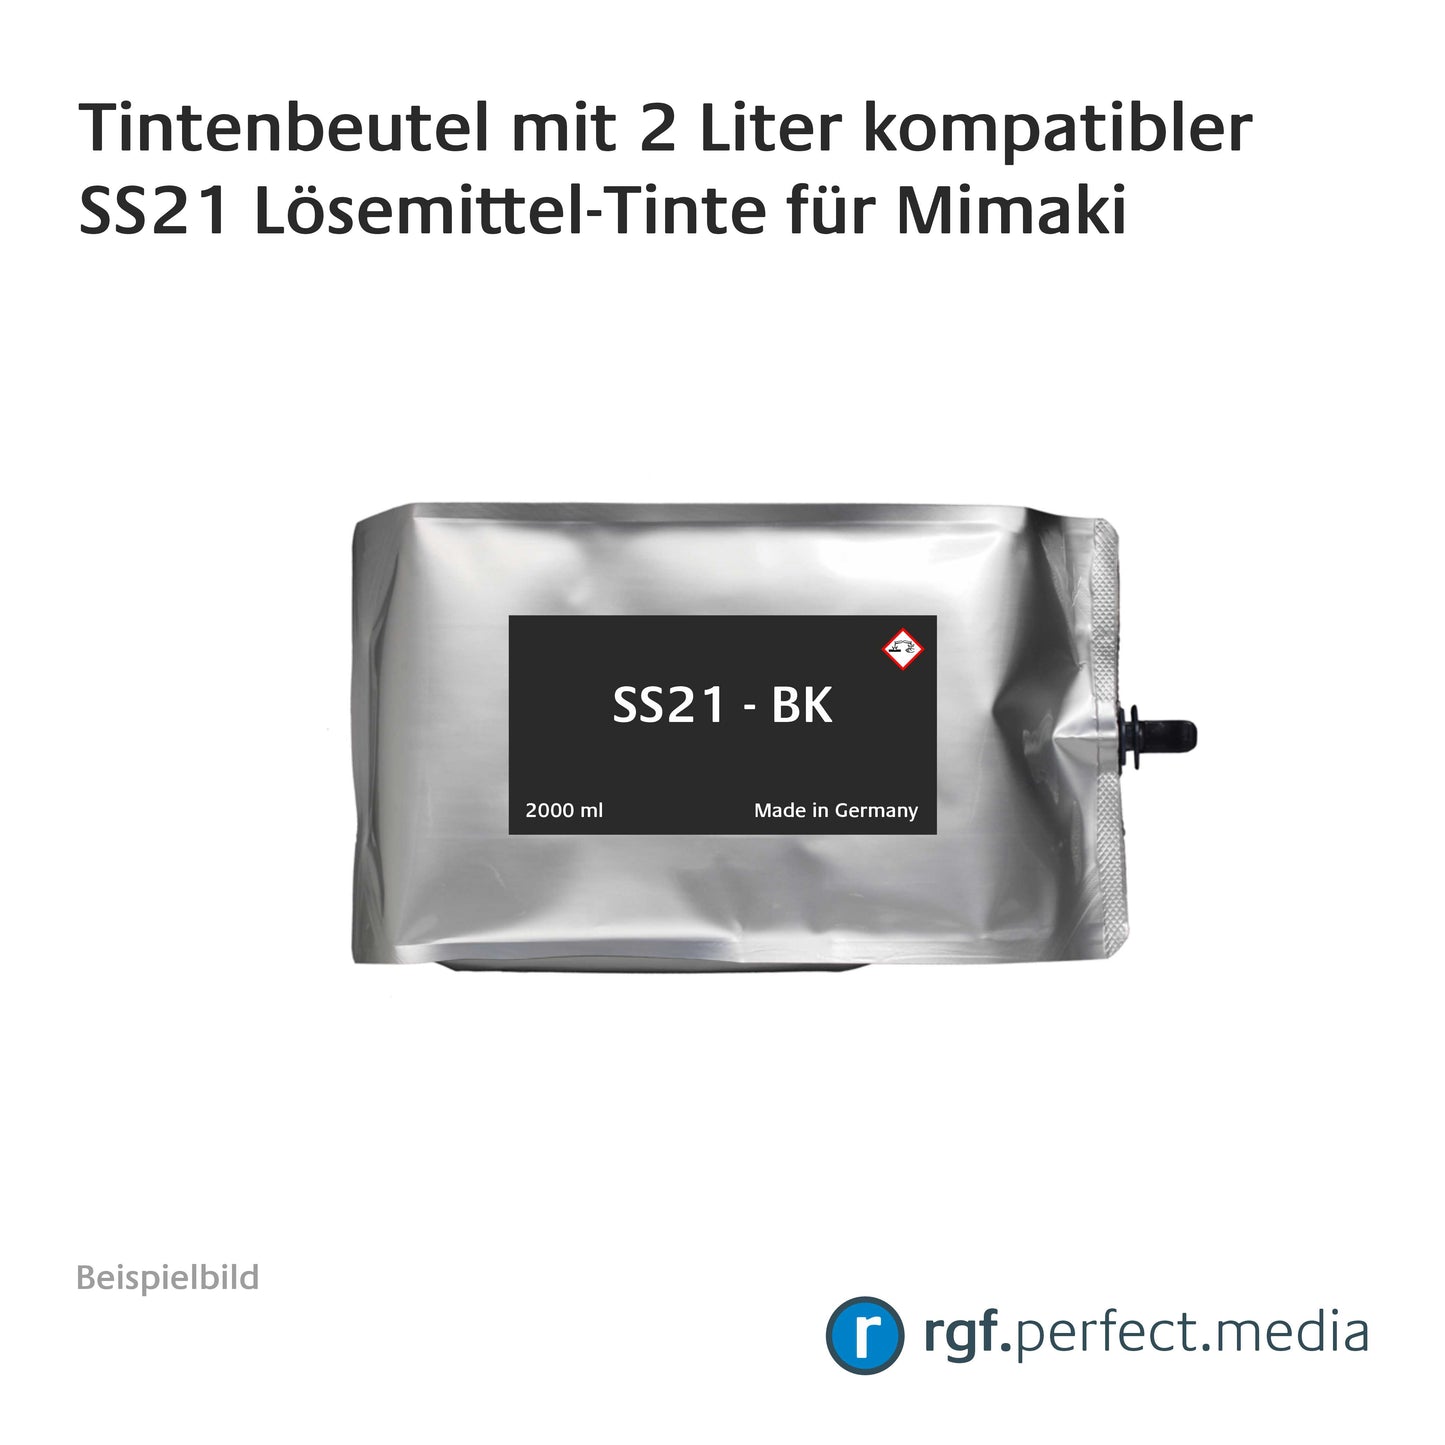 Tintenbeutel mit 2 Liter kompatibler SS21 Lösemittel-Tinte für Mimaki inklusive Chip